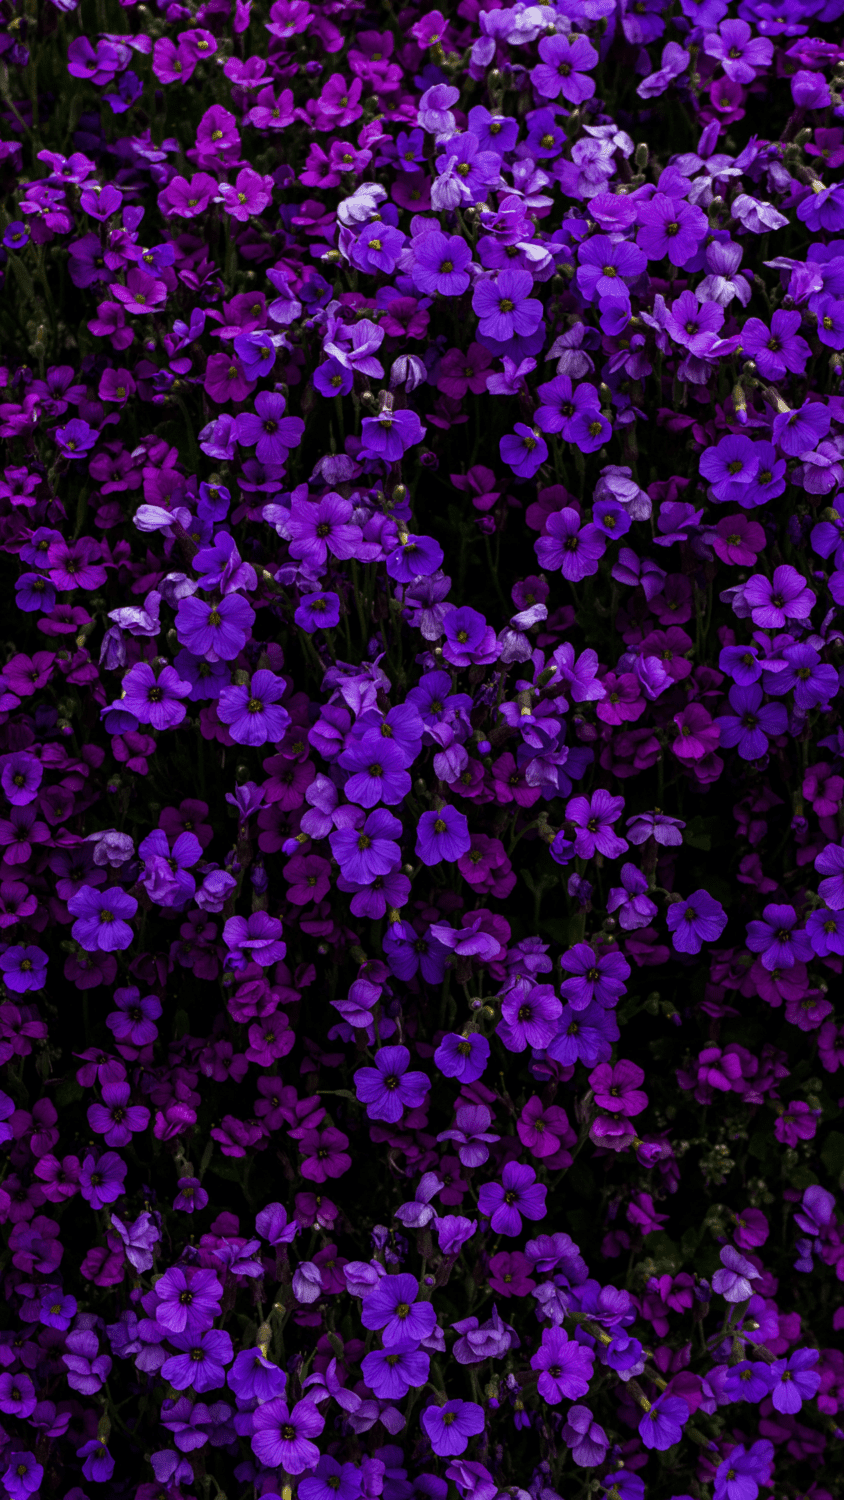 A field of purple flowers. - Neon purple, dark purple